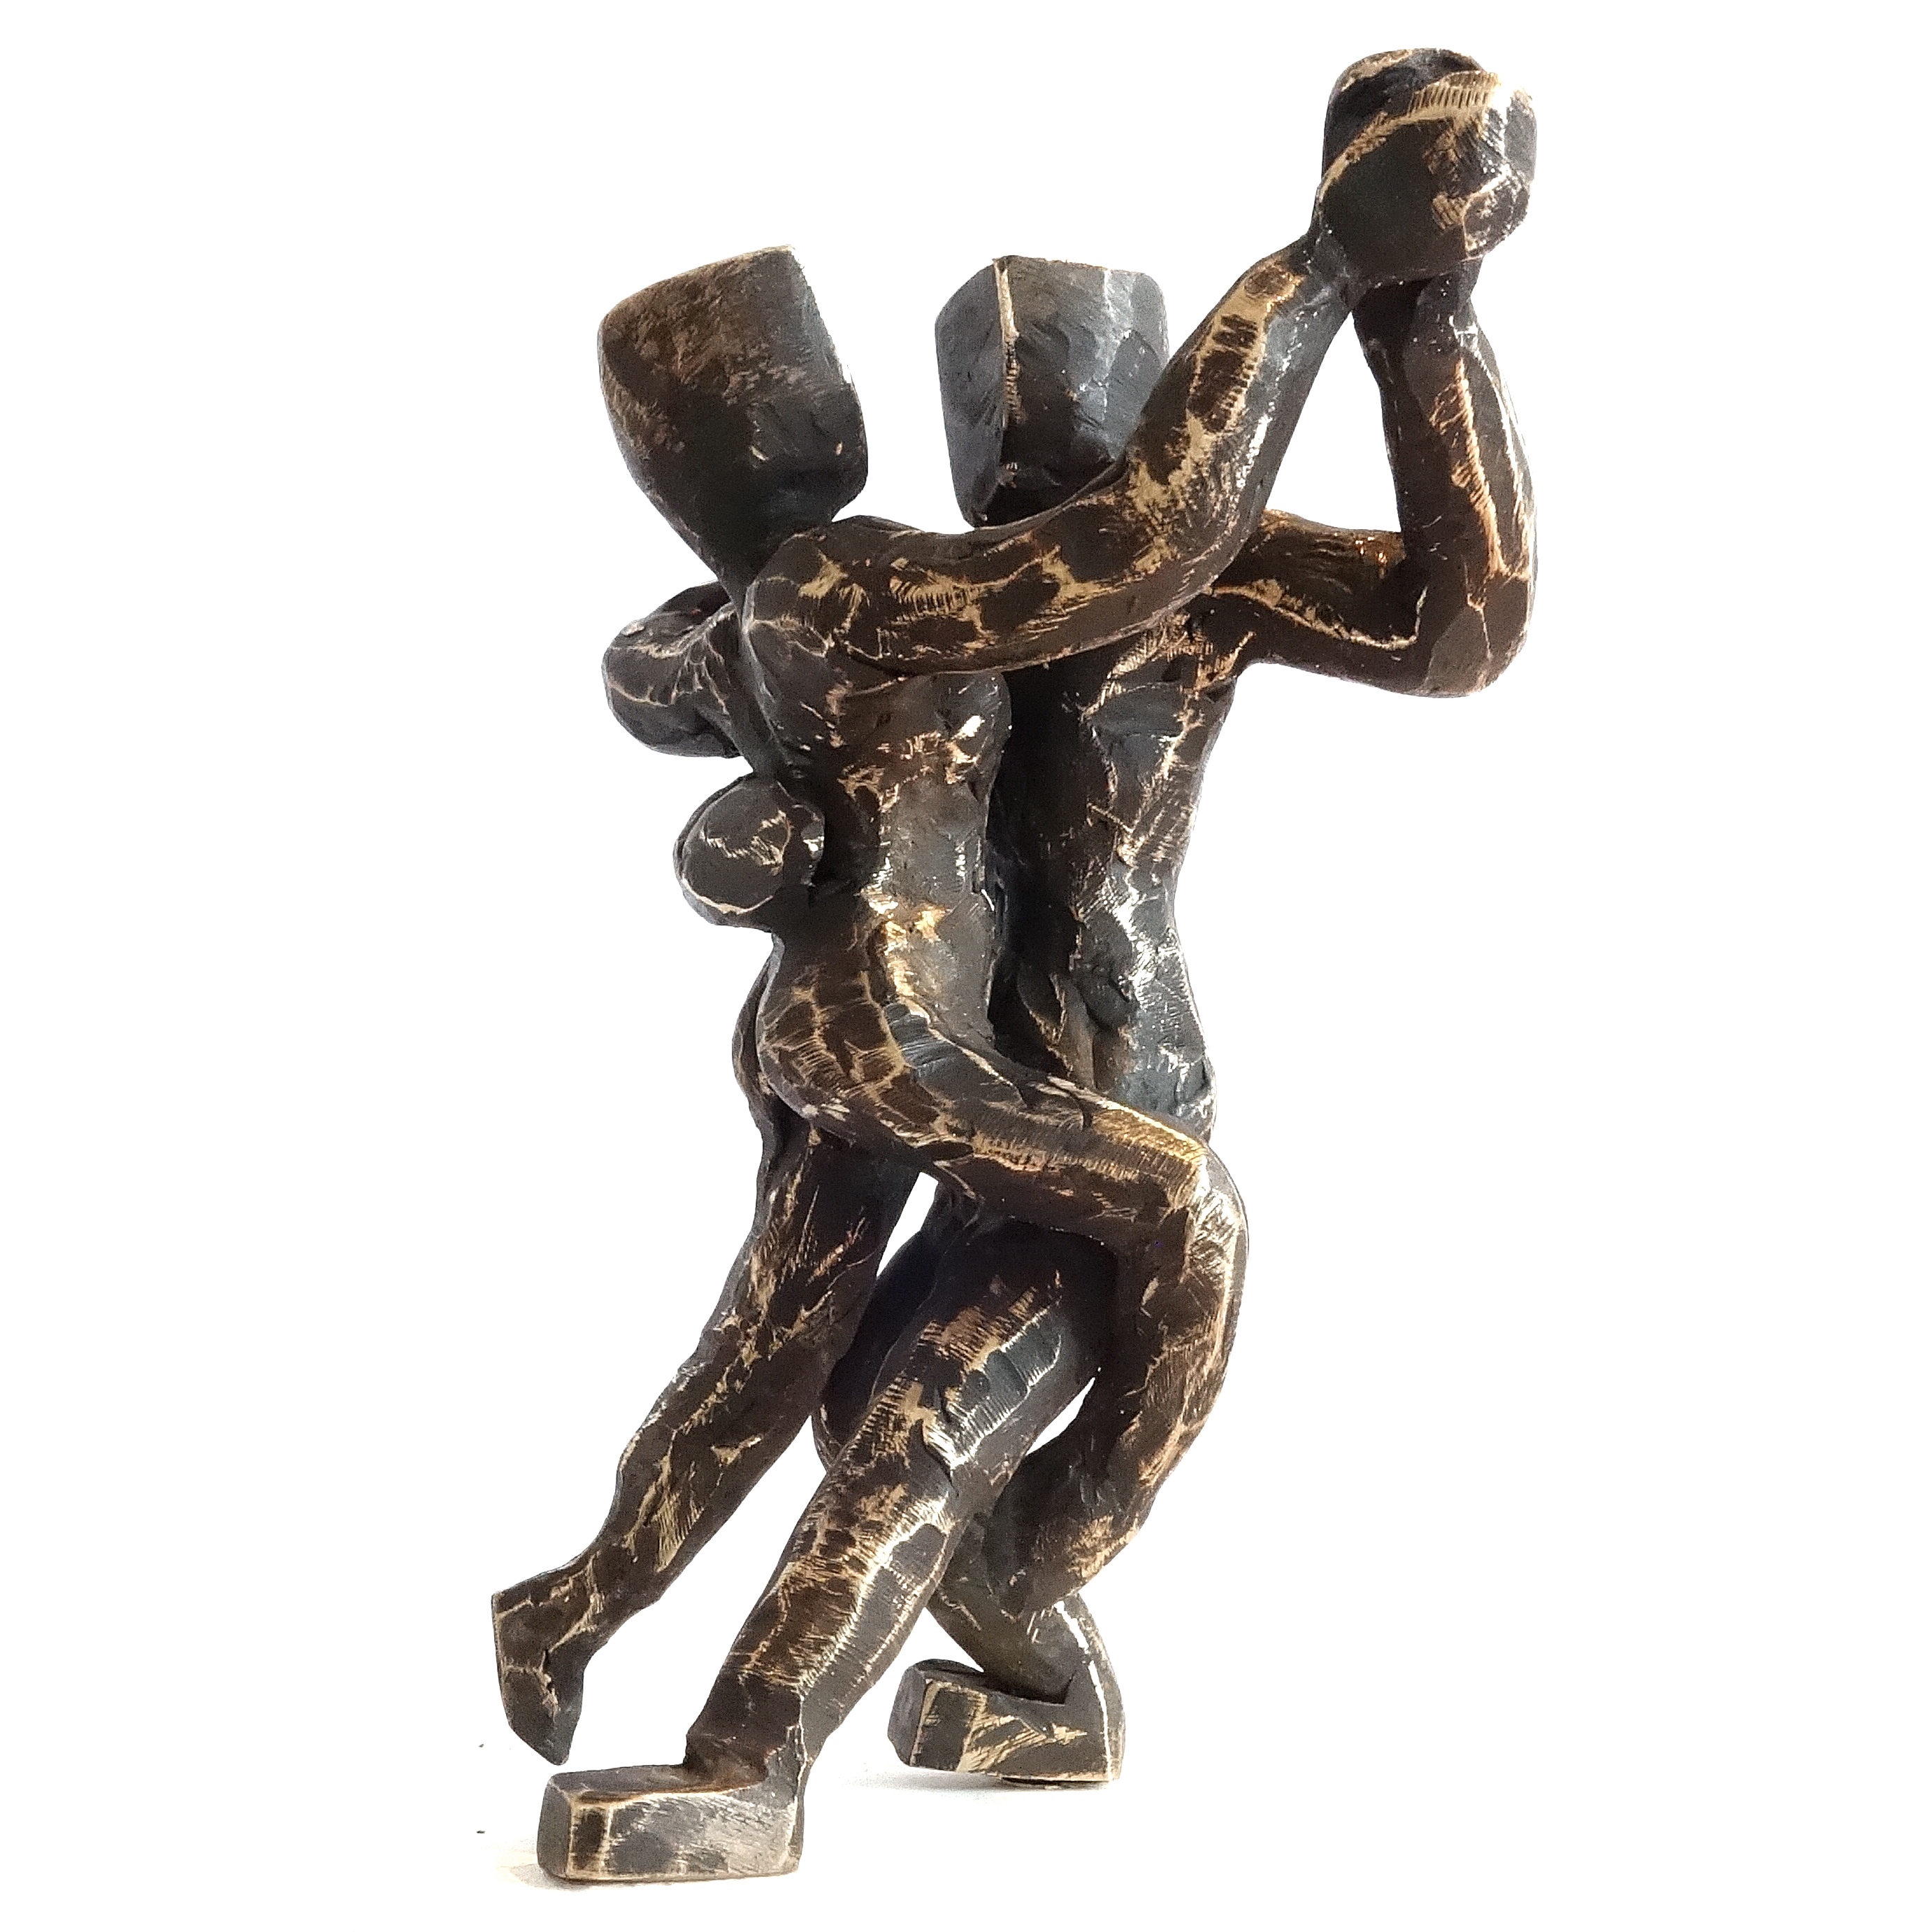 o.T., Serie KörperHaltungen II, 2018, Bronze, 5 x 4 x 7 cm